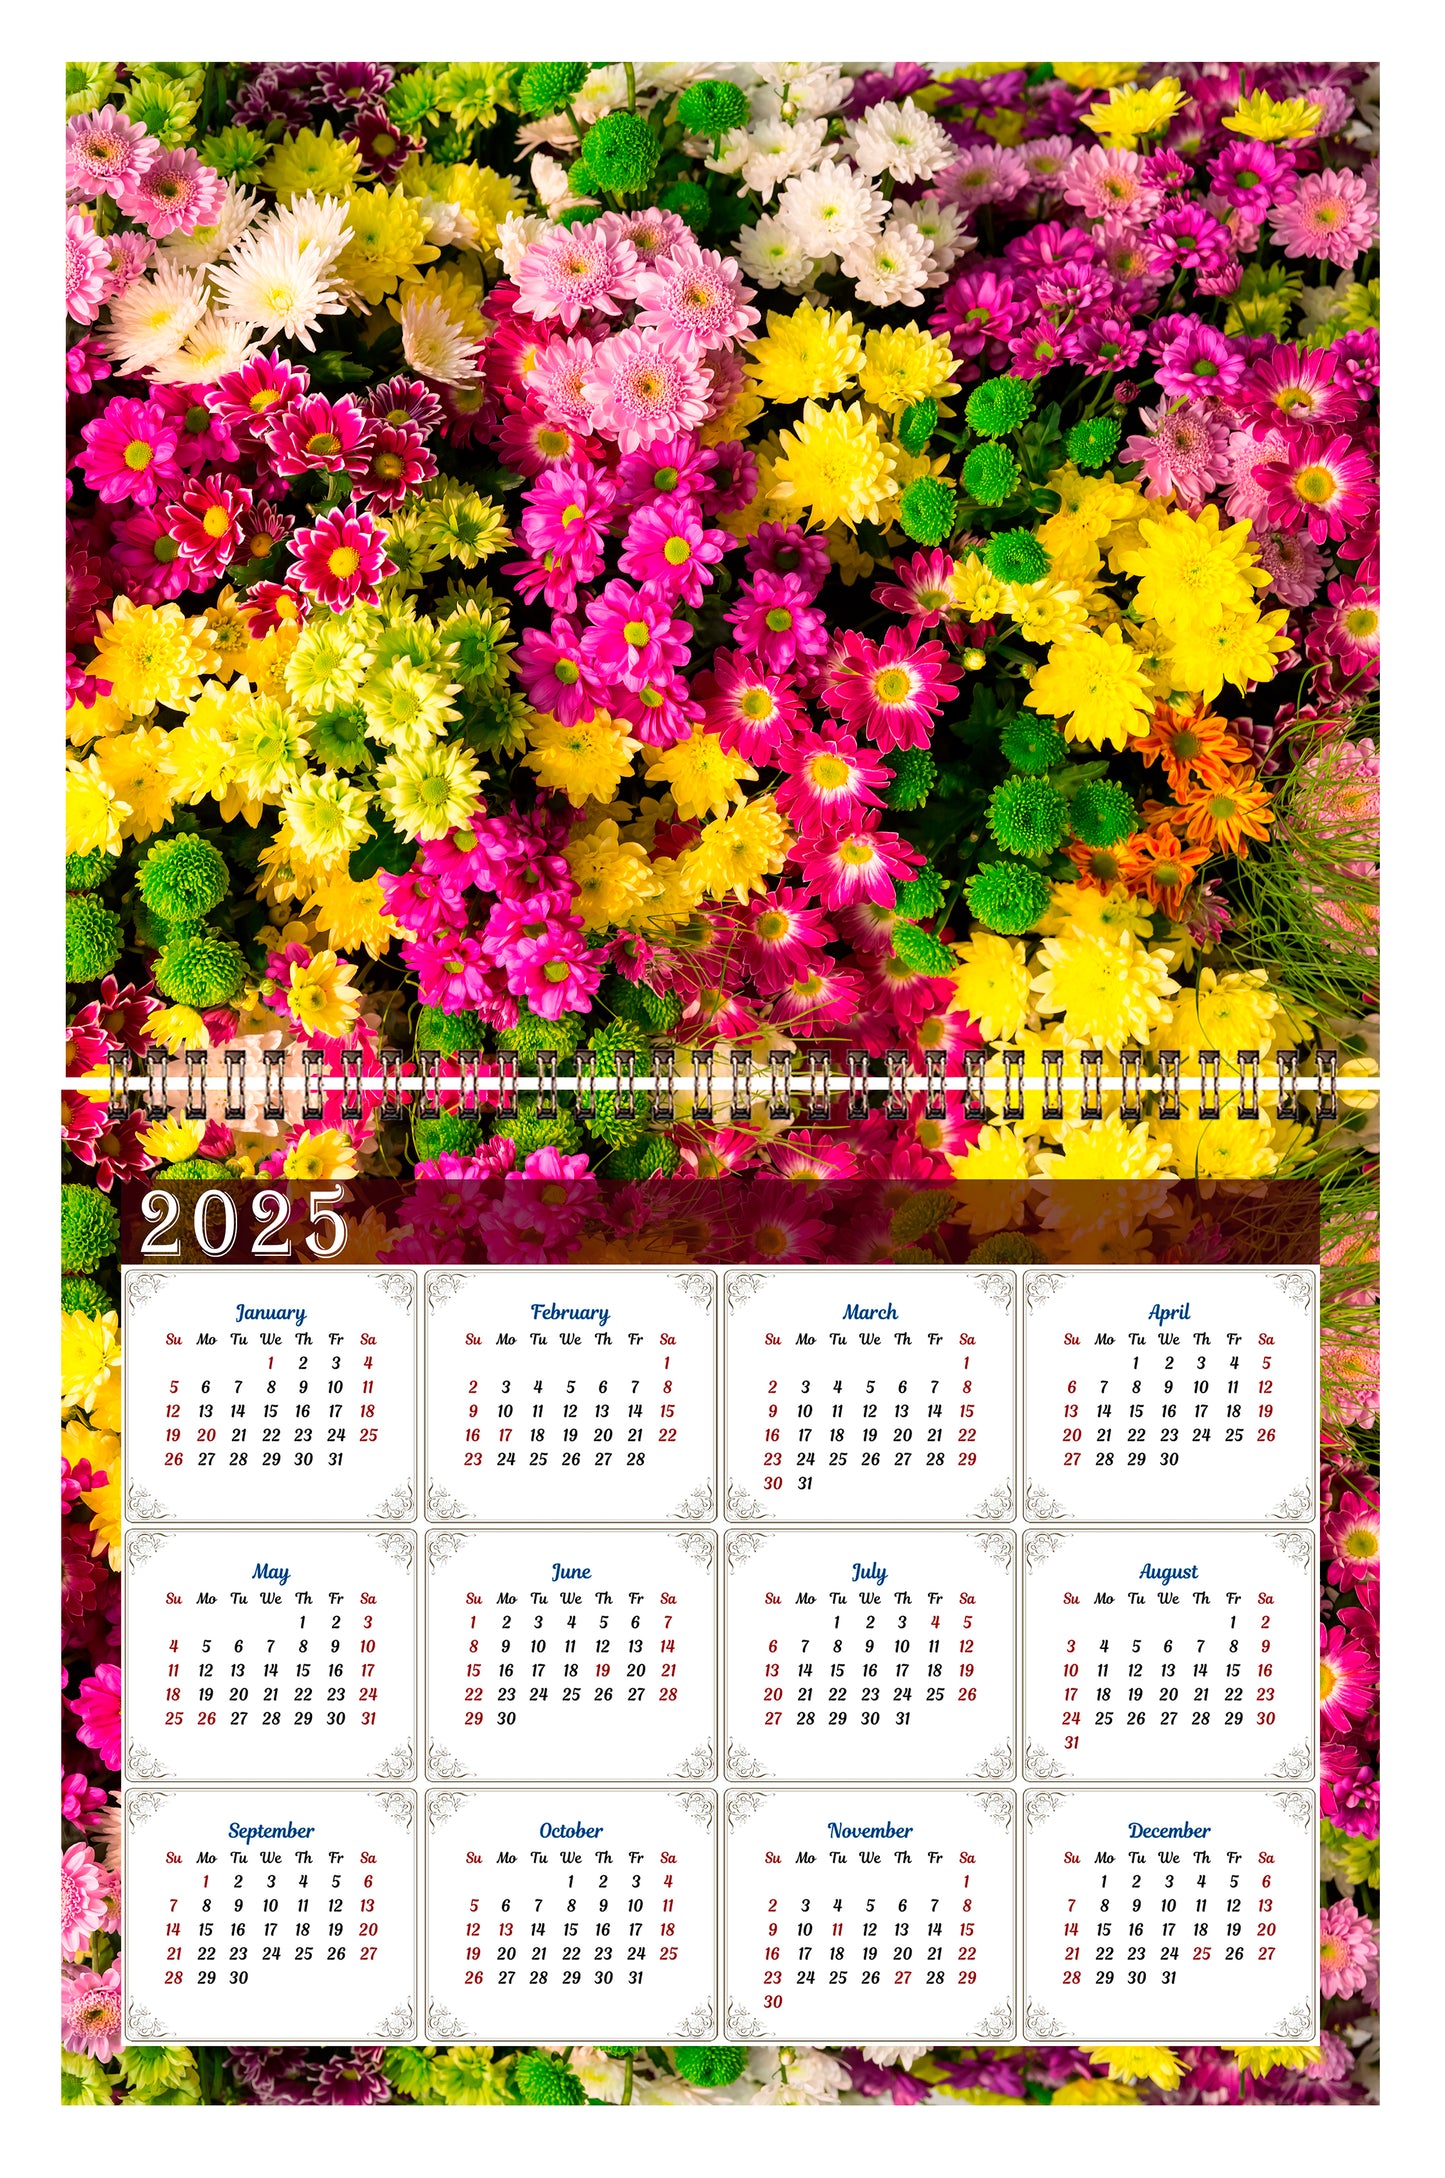 2024 Scrapbook Wall Calendar Spiral-bound (Add Your Own Photos) - 12 Months Desktop #012